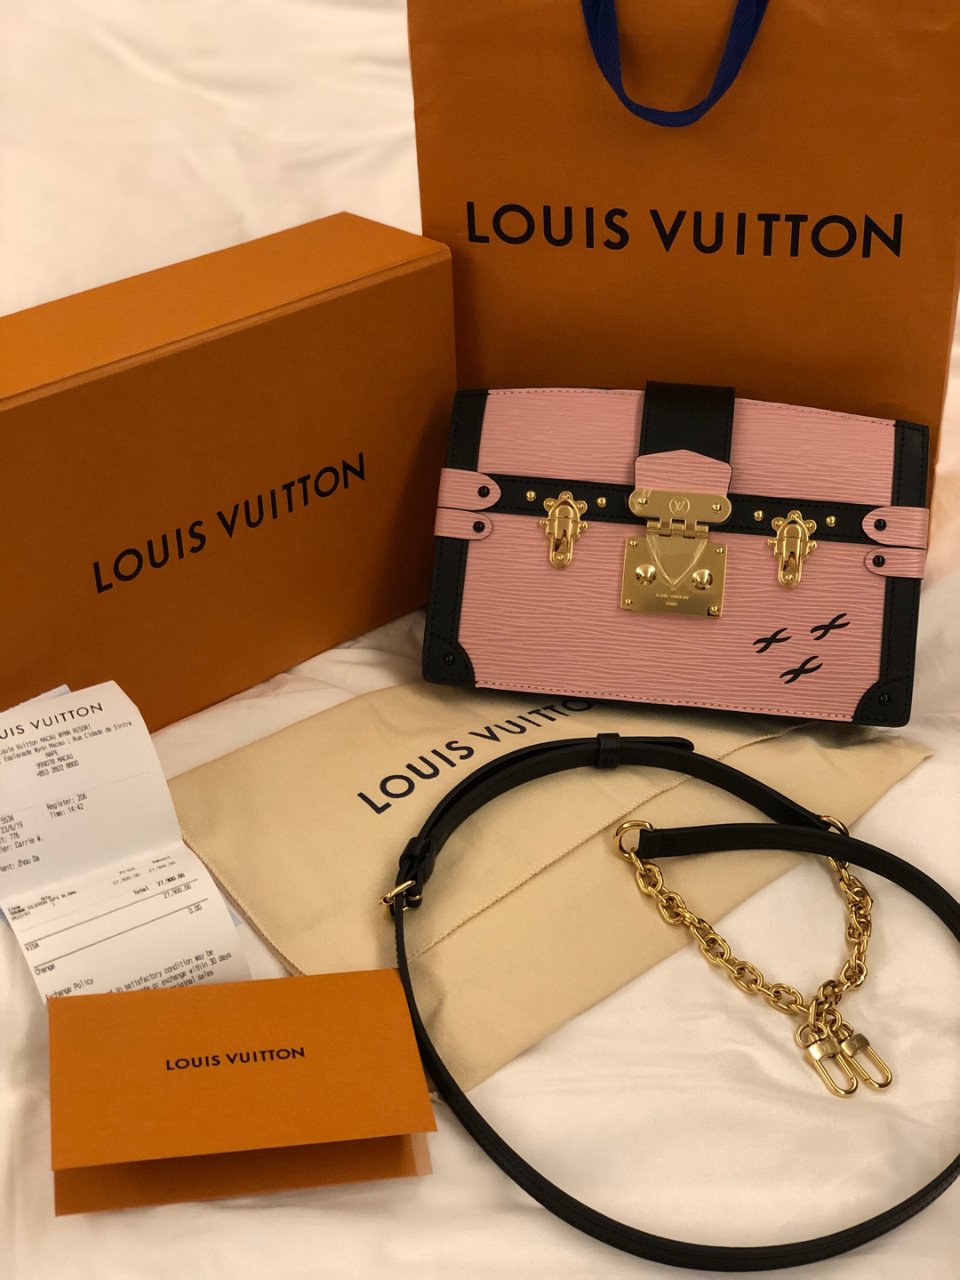 Louis Vuitton 路易·威登,27900人民币